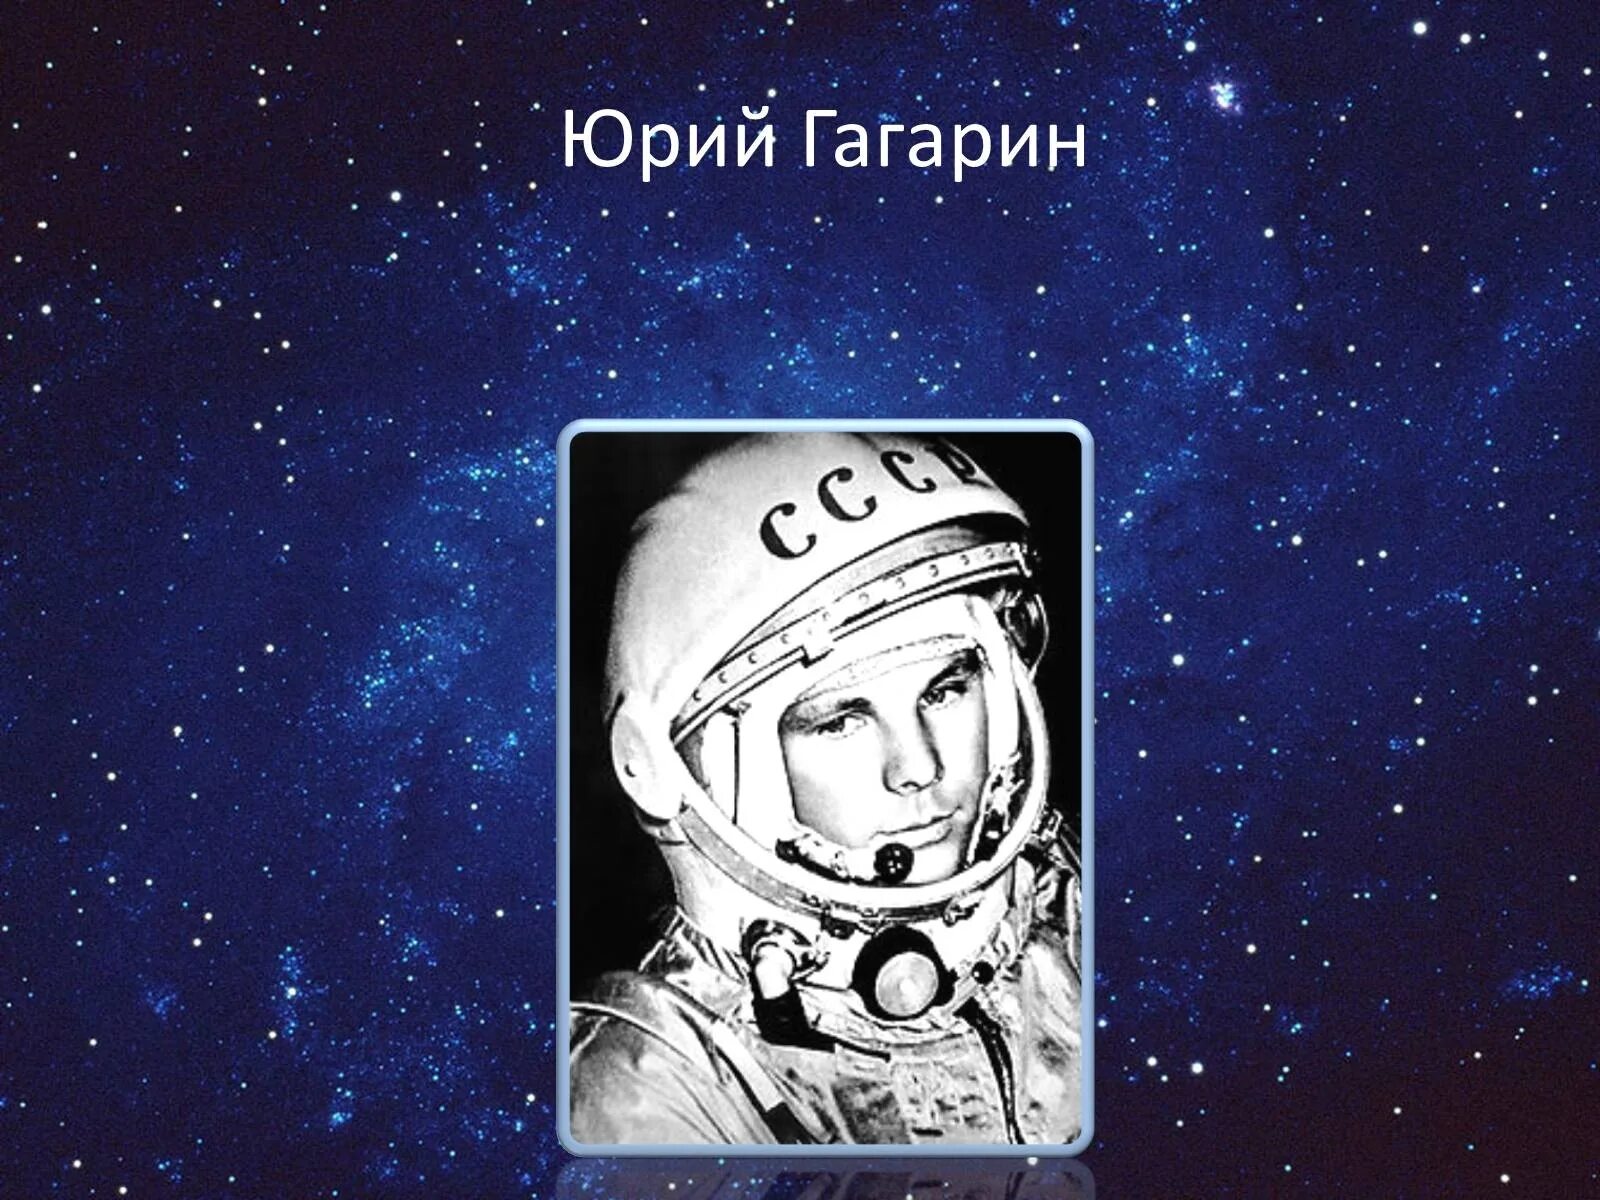 1961 год космос. 1961 Первый полет человека в космос. 1961 Г полет ю Гагарина в космос. Полет Гагарина в космос 12 апреля 1961. 1961 Г. – первый полет человека в космос (СССР)..